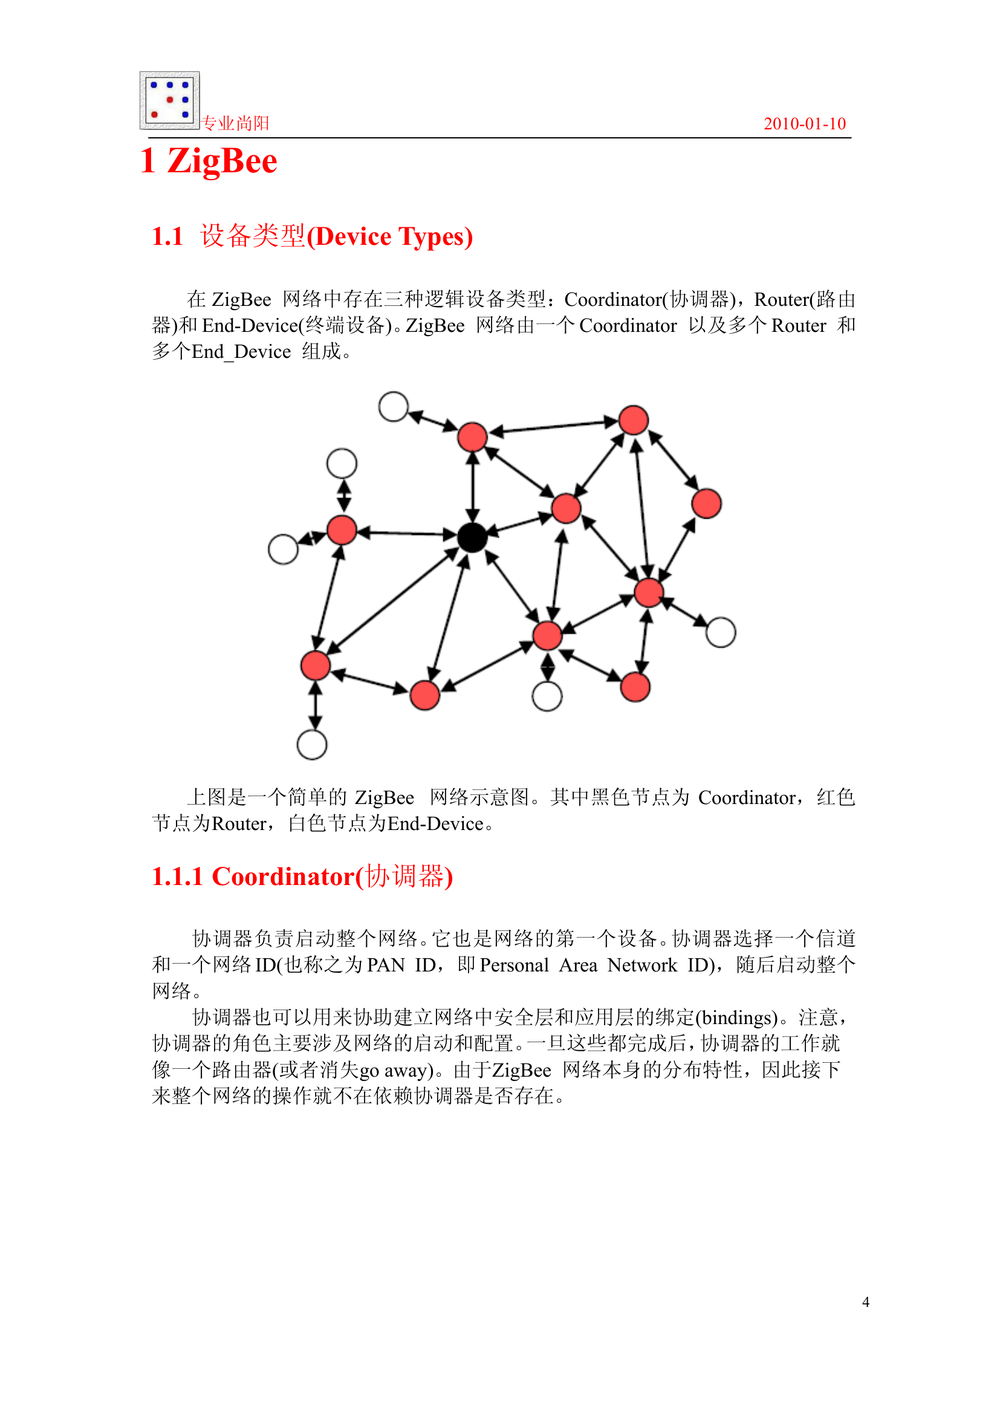 ZigBee 2006协议栈_开发指导手册_专业尚阳.PDF-第4页.png